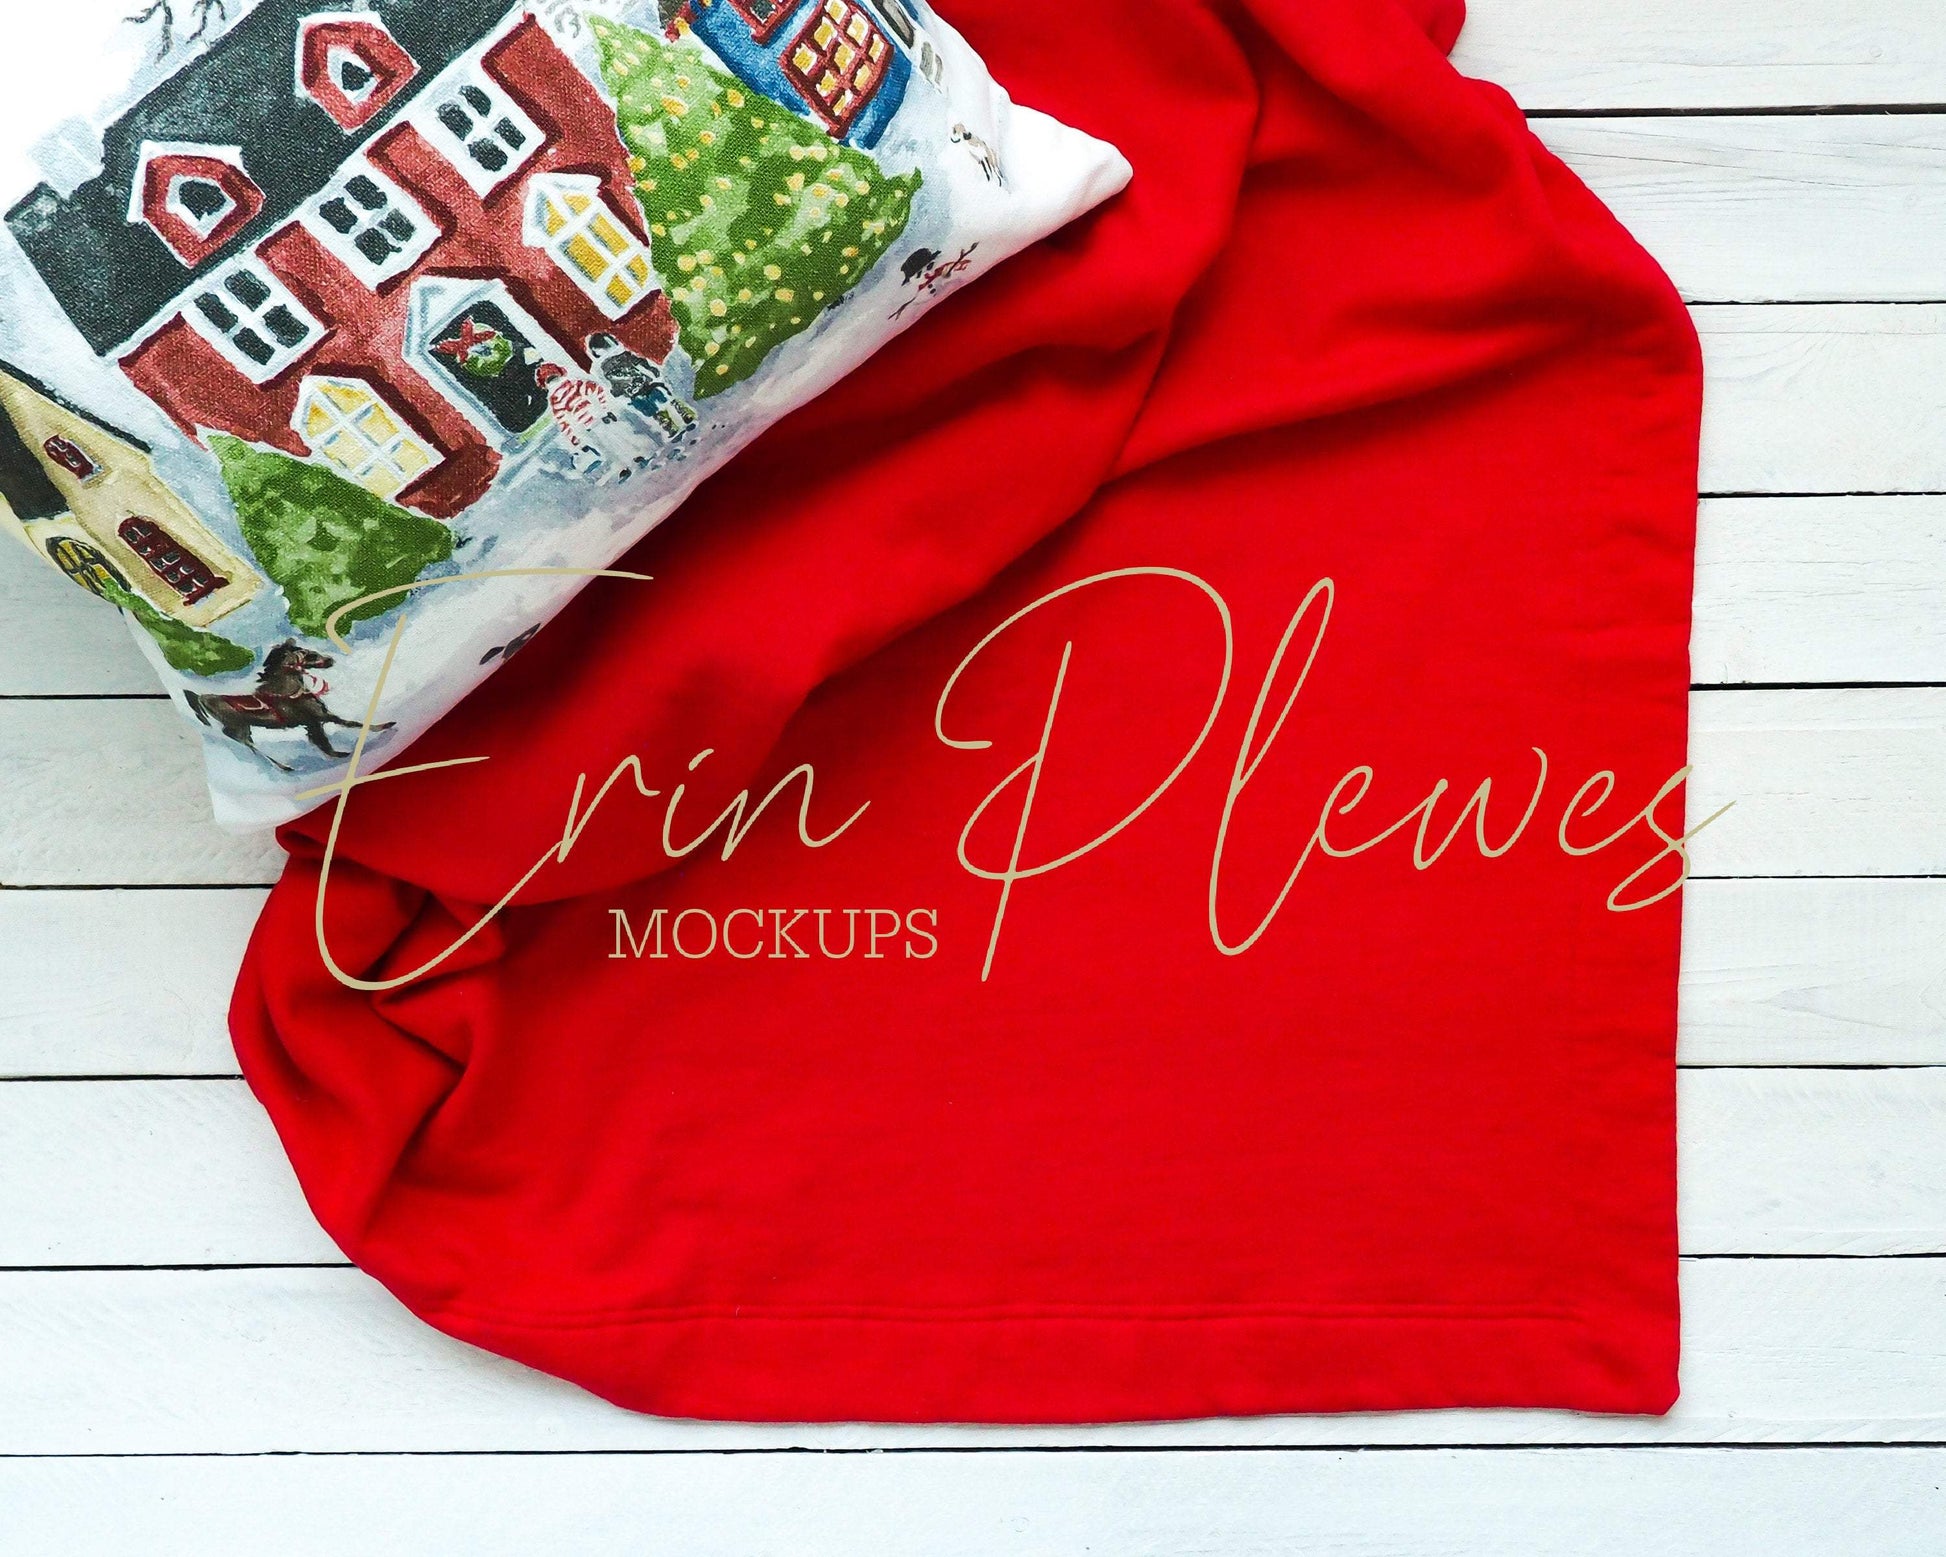 Erin Plewes Mockups Red Blanket Mockup, Christmas Blanket Mockup, Fleece Blanket Mock up, Styled Stock Photo Instant Download